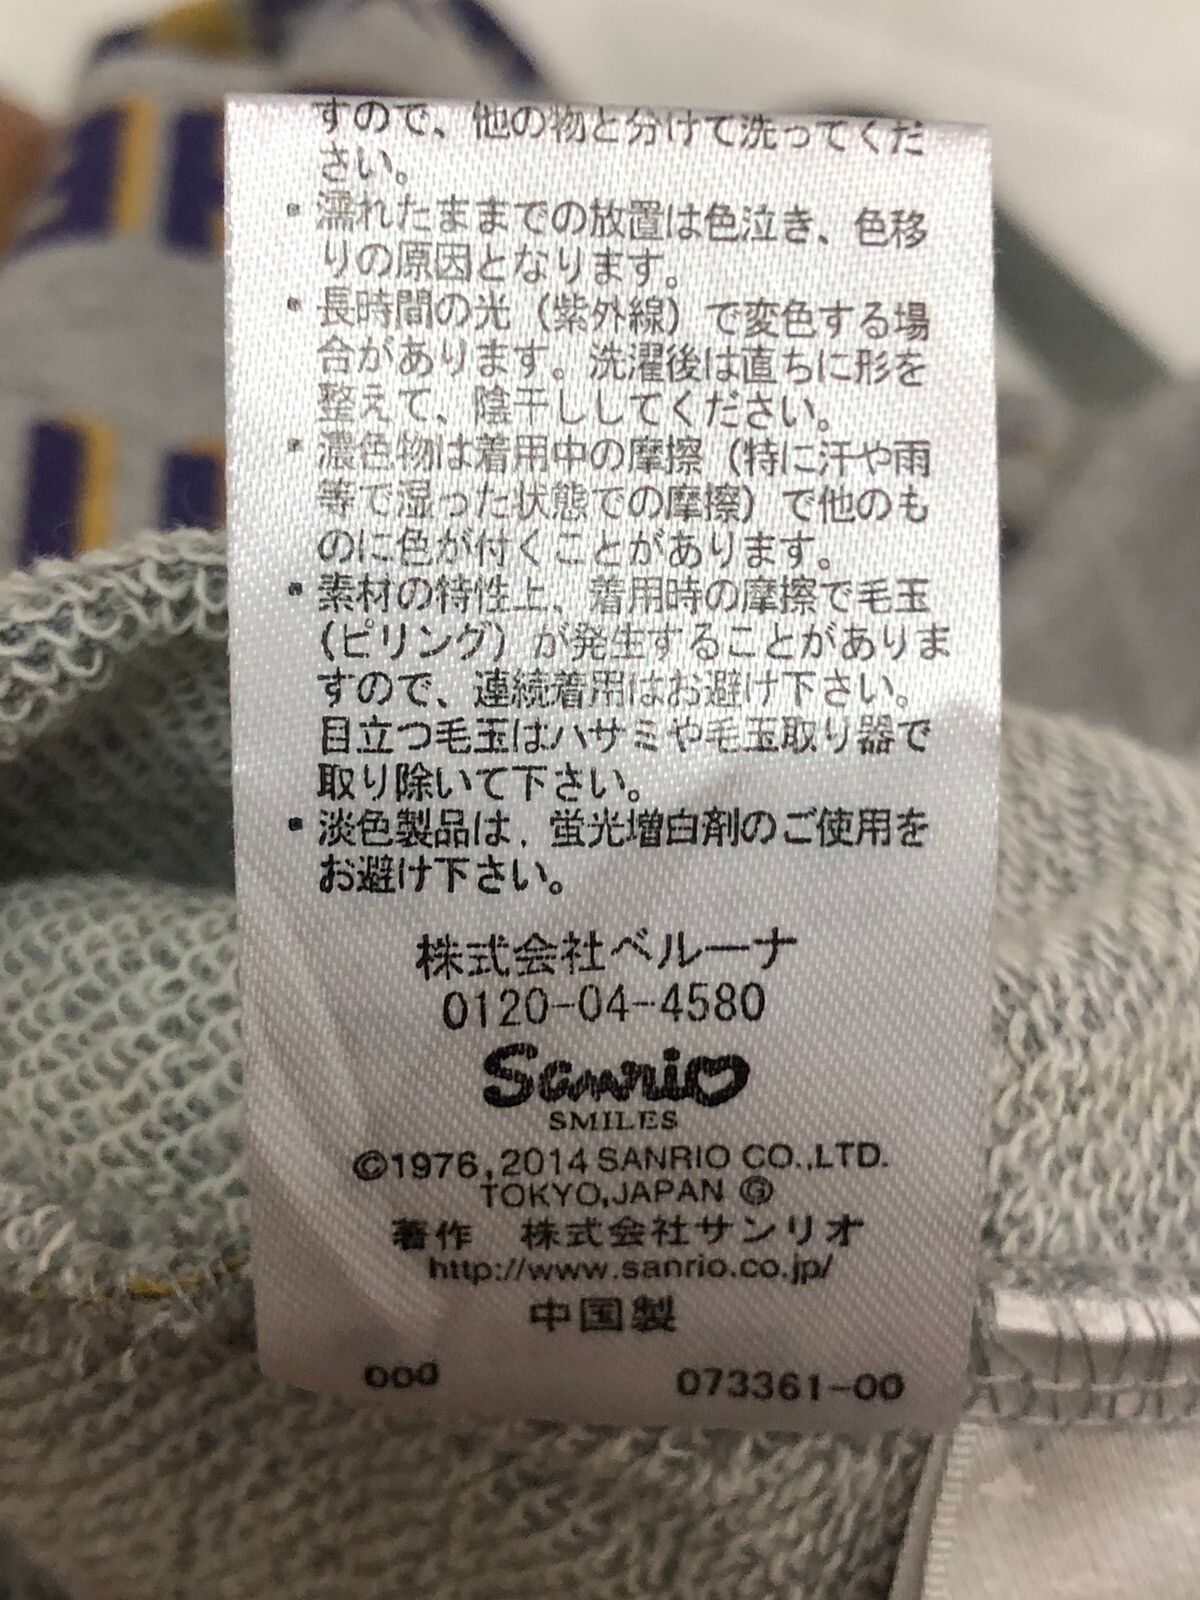 Japanese Brand - Hello Kitty All Over Print Skirt - 4